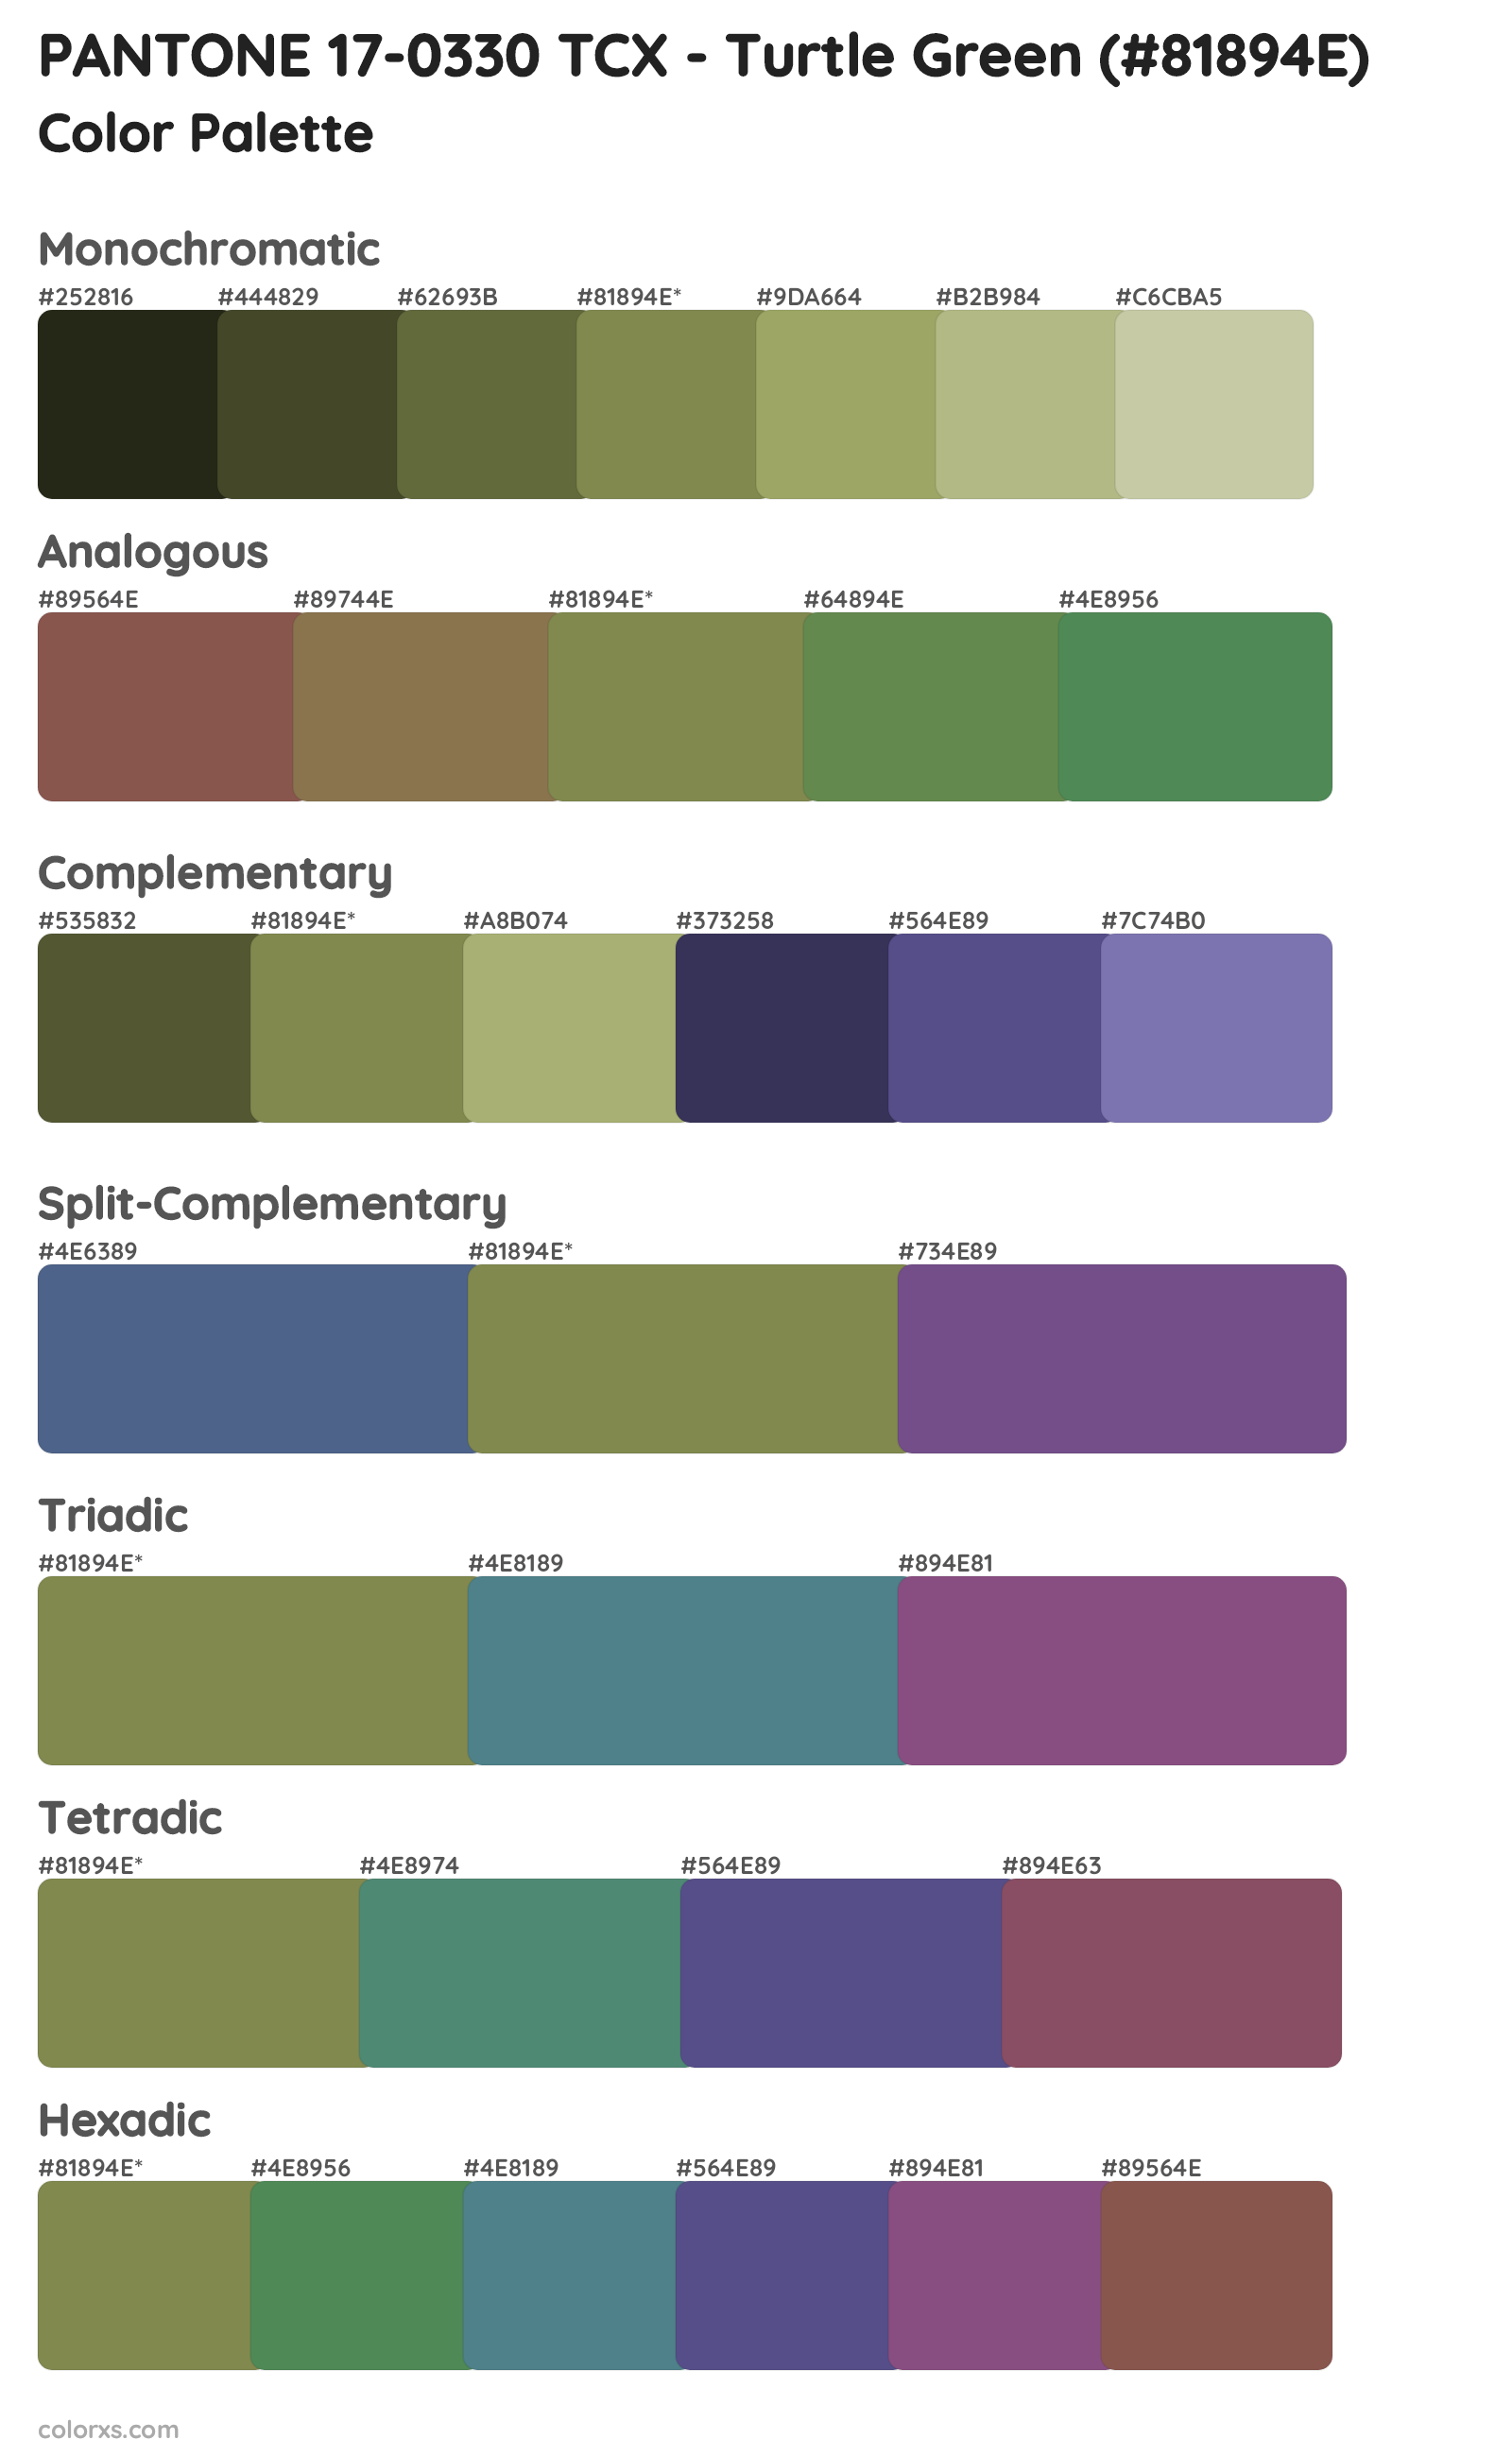 PANTONE 17-0330 TCX - Turtle Green Color Scheme Palettes